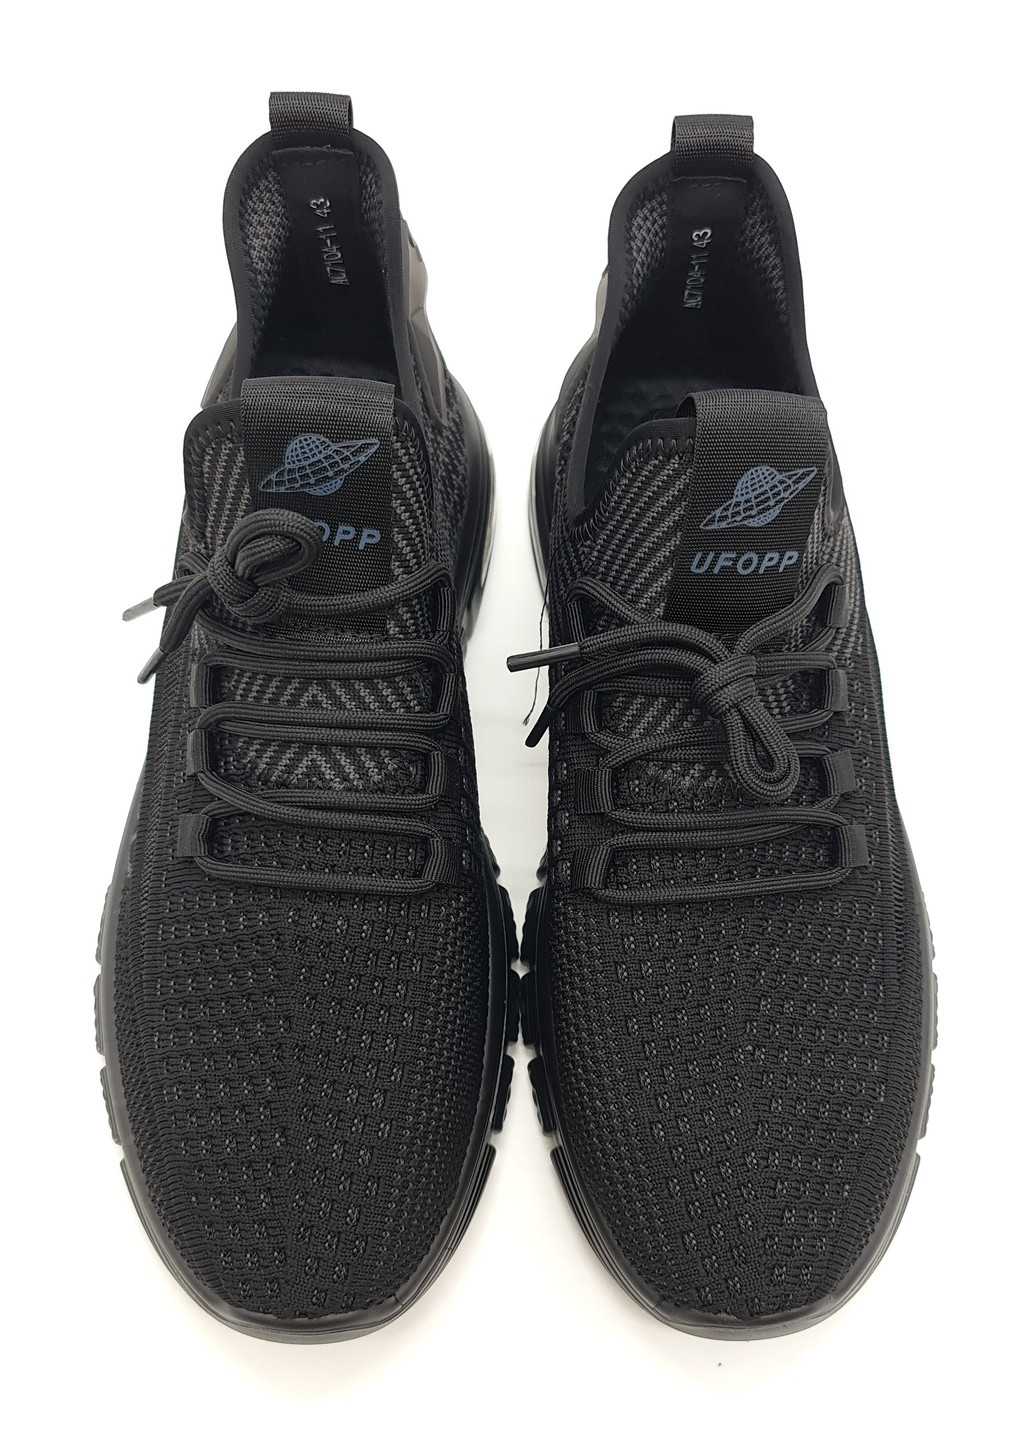 Черные всесезонные мужские кроссовки черные текстиль uf-15-1 26 см(р) UFOPP